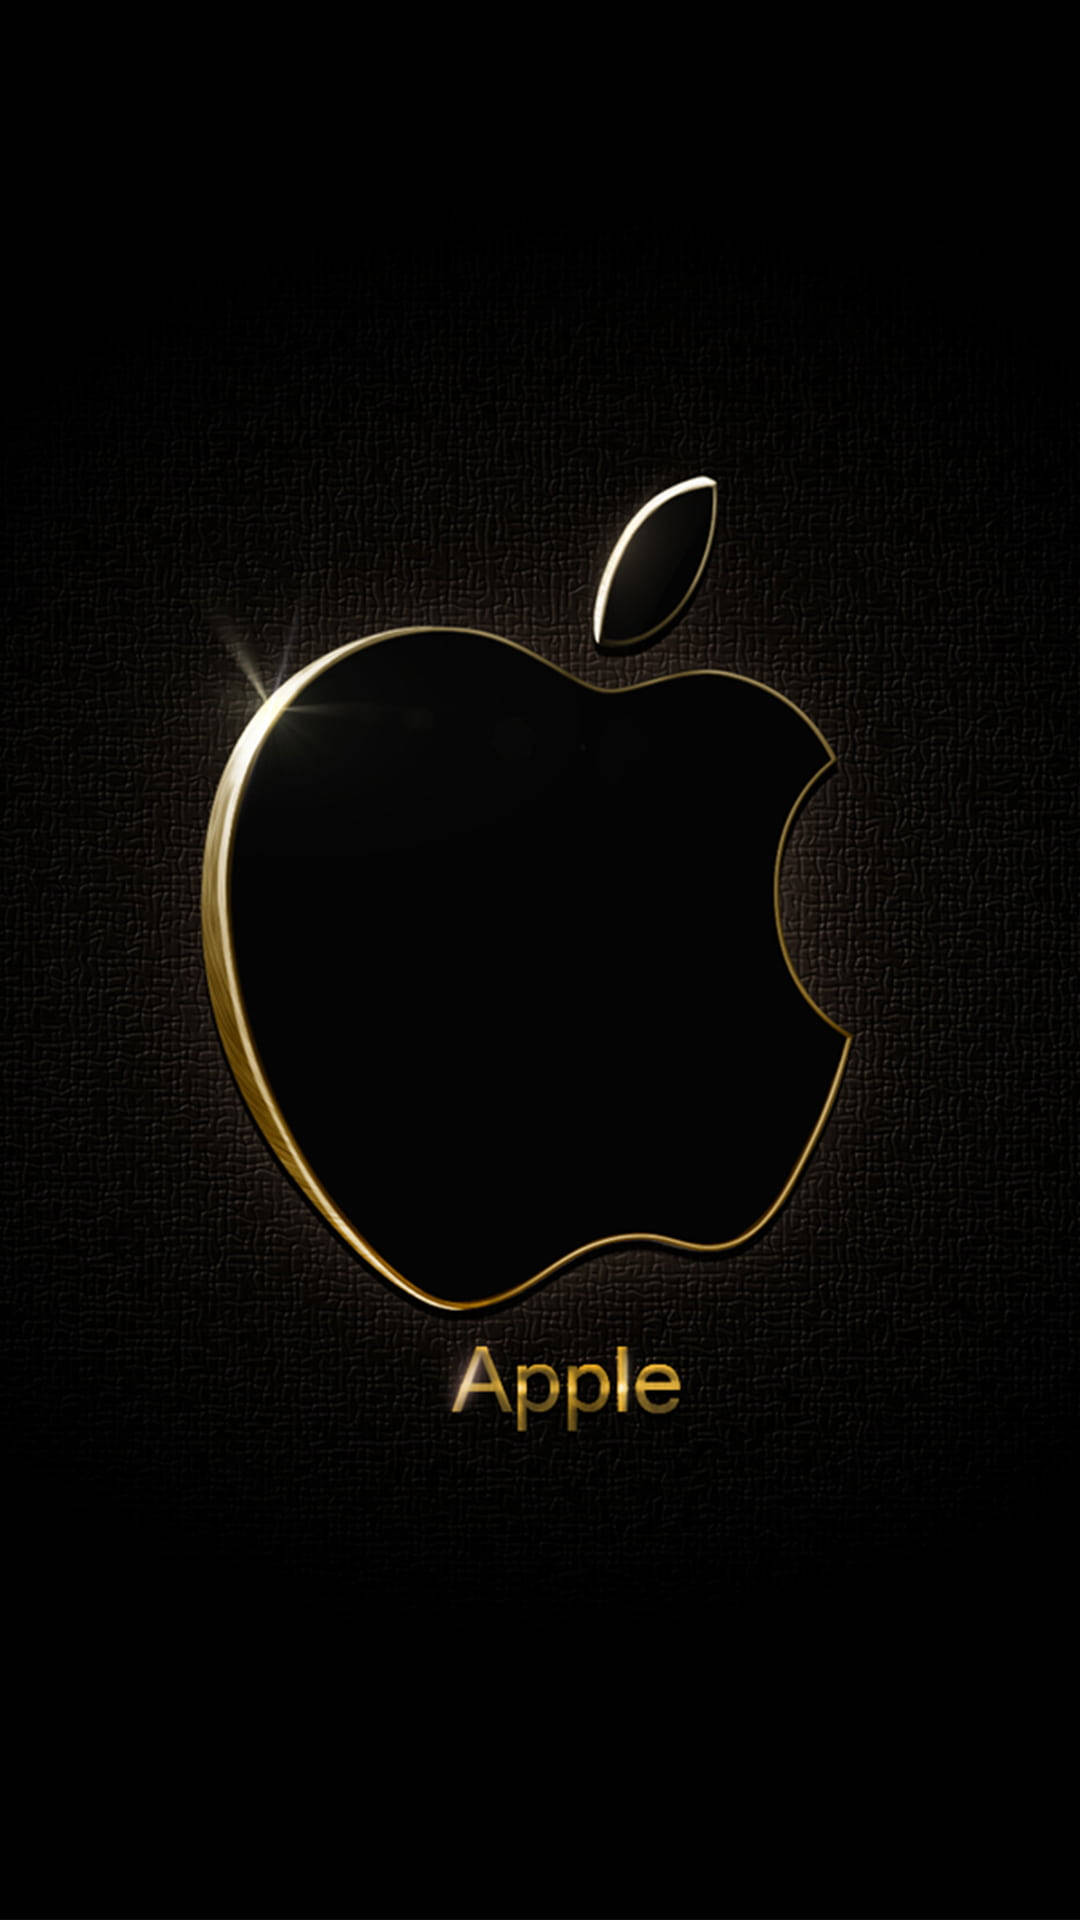 50+] Apple Logo Wallpaper for iPhone - WallpaperSafari